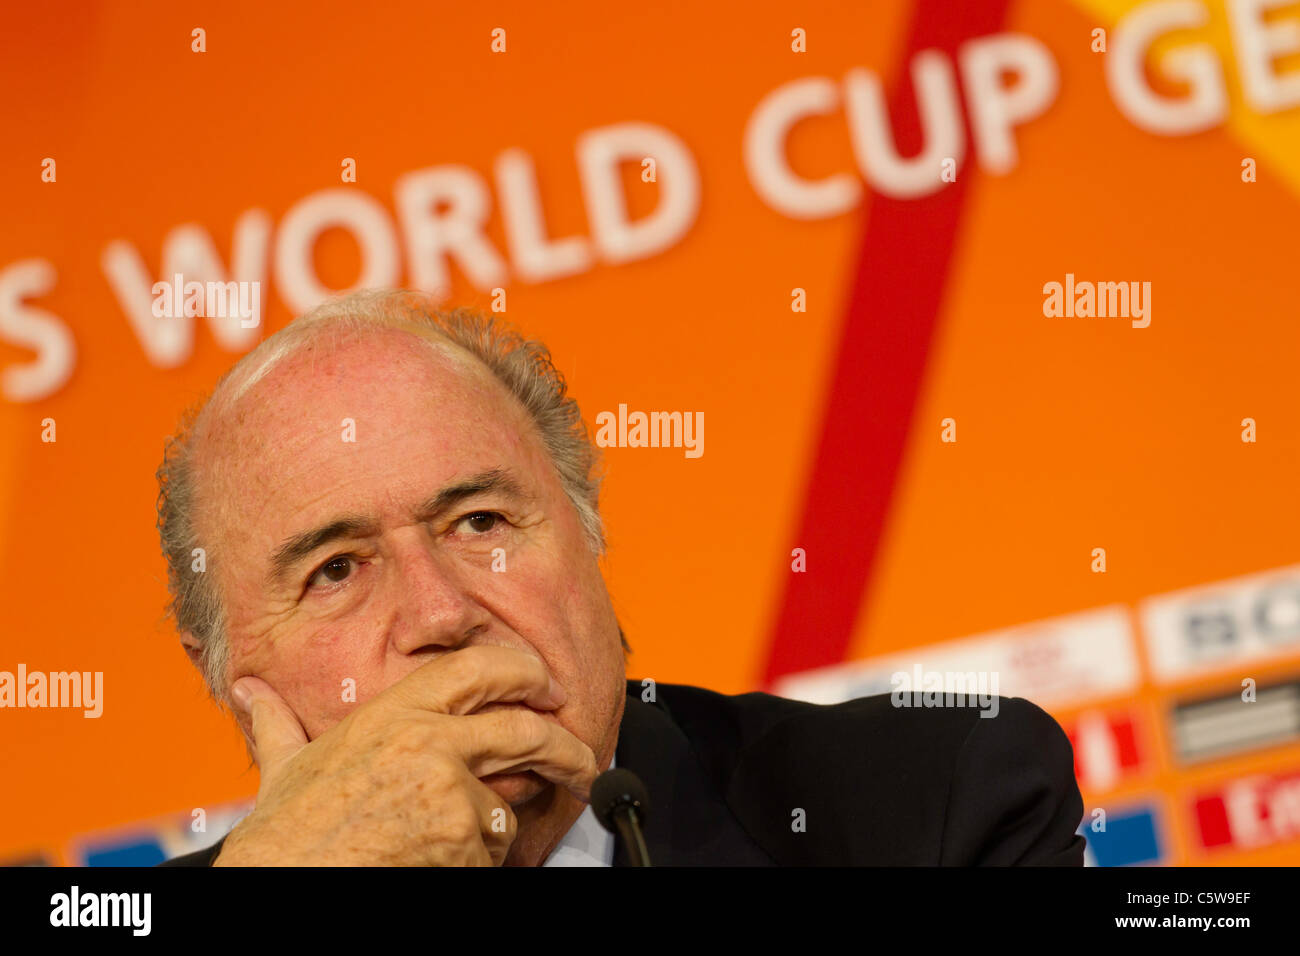 El Presidente de la FIFA, Joseph Blatter, escucha a una pregunta en la conferencia de prensa inaugural de la Copa Mundial Femenina 2011 torneo. Foto de stock